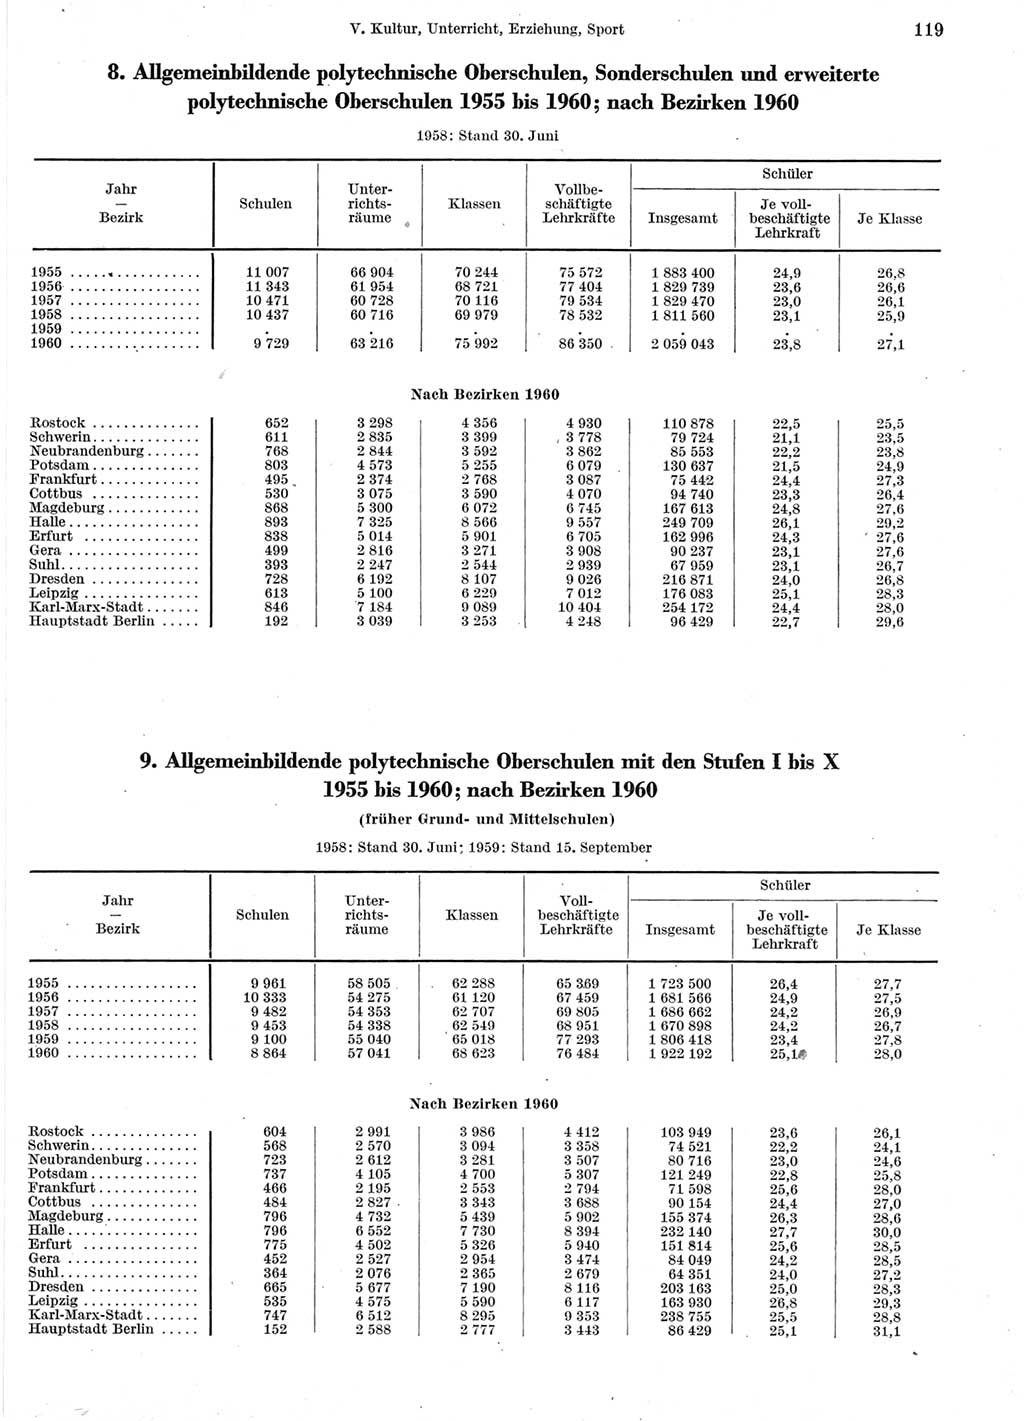 Statistisches Jahrbuch der Deutschen Demokratischen Republik (DDR) 1960-1961, Seite 119 (Stat. Jb. DDR 1960-1961, S. 119)